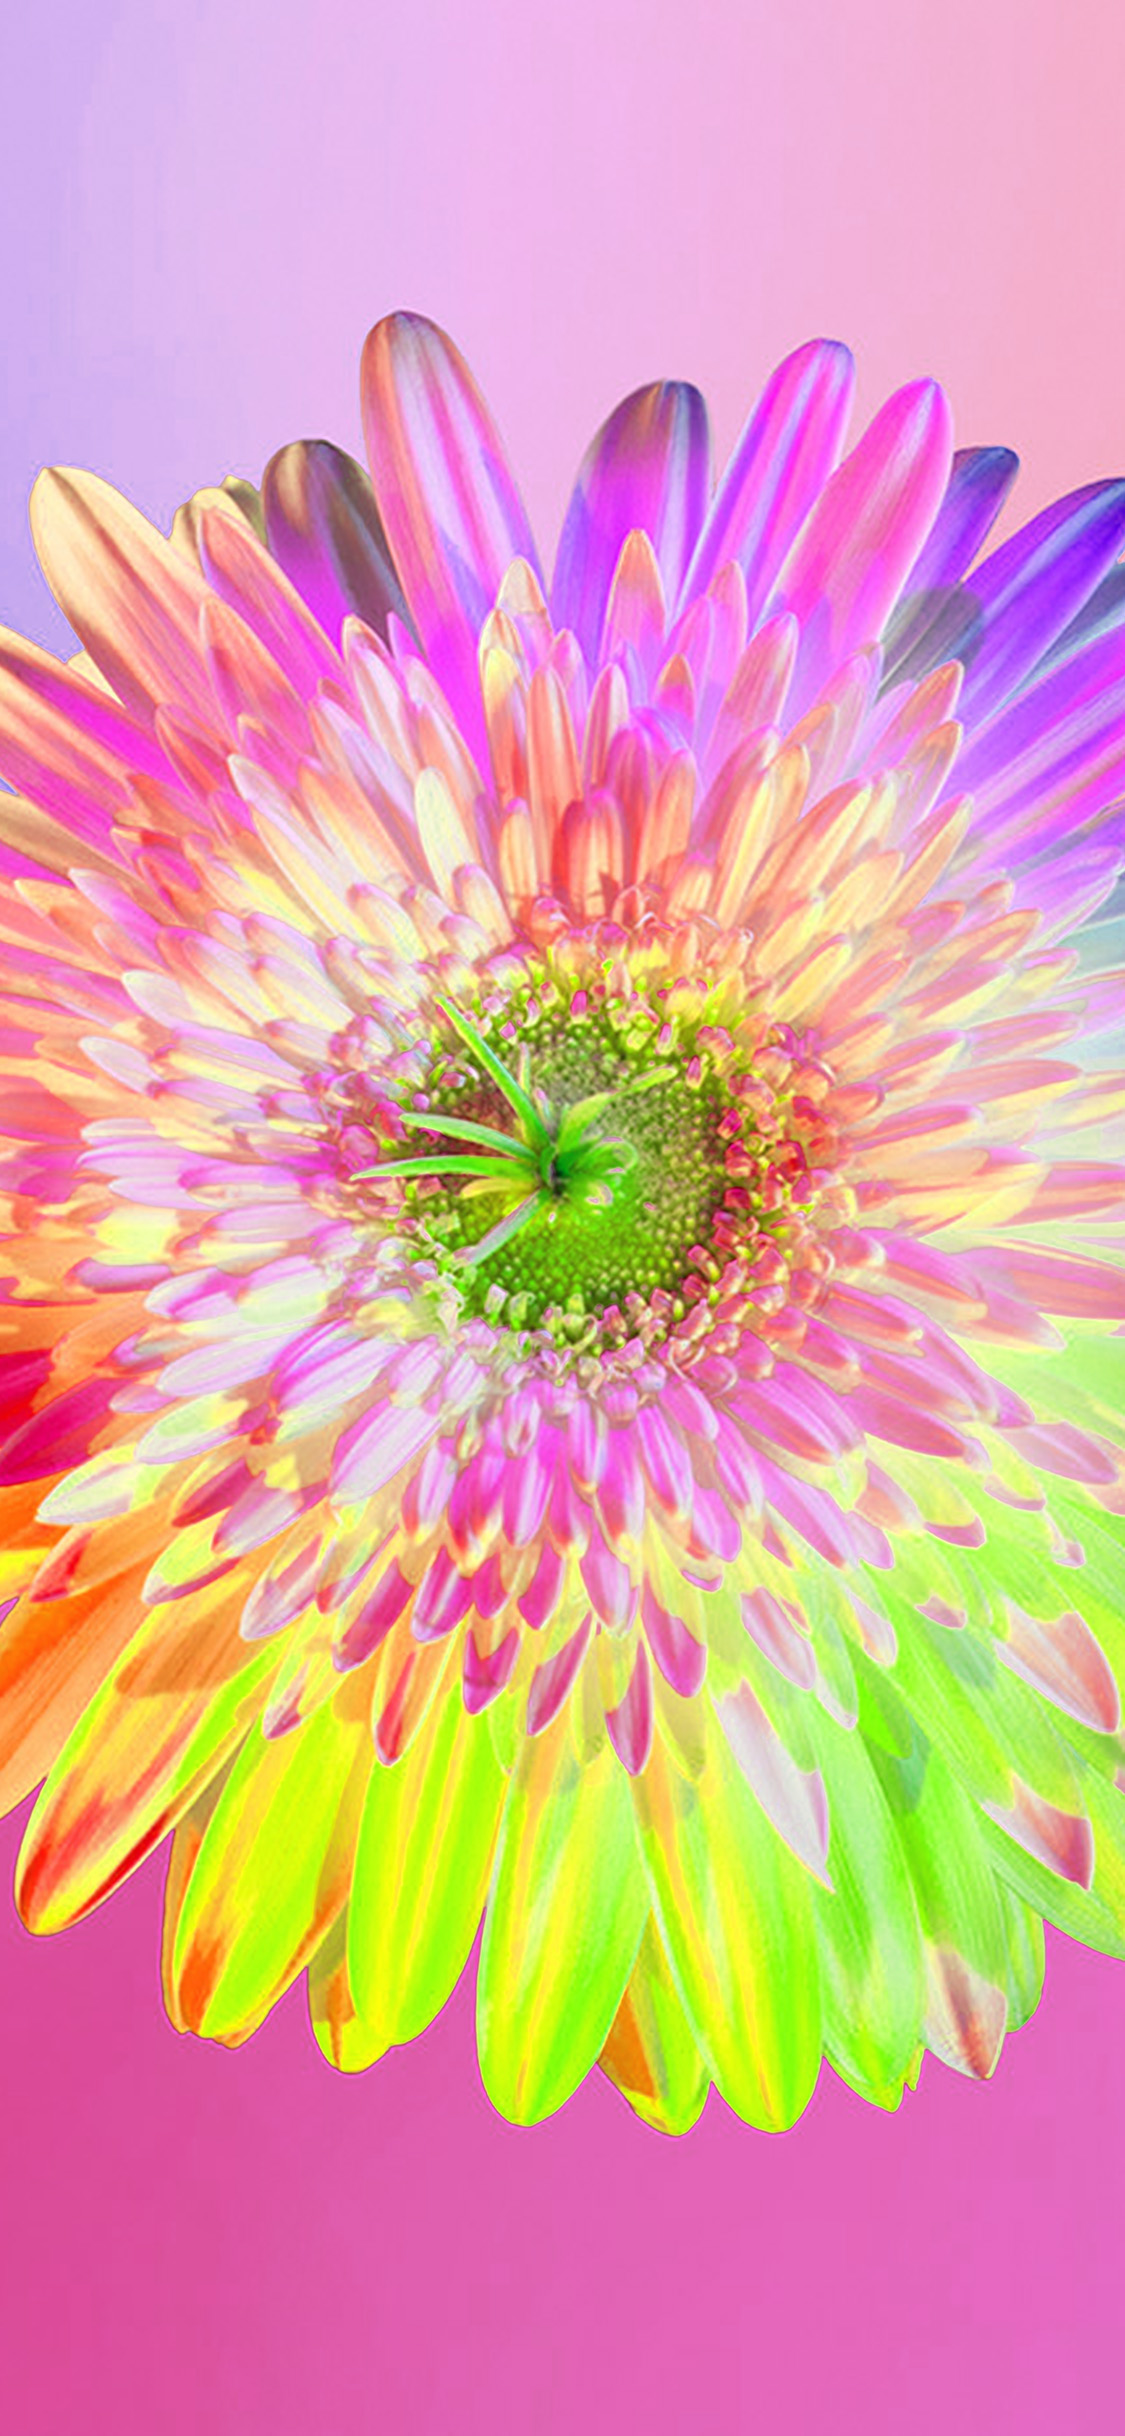 iPhone X wallpaper. art rainbow flower pink